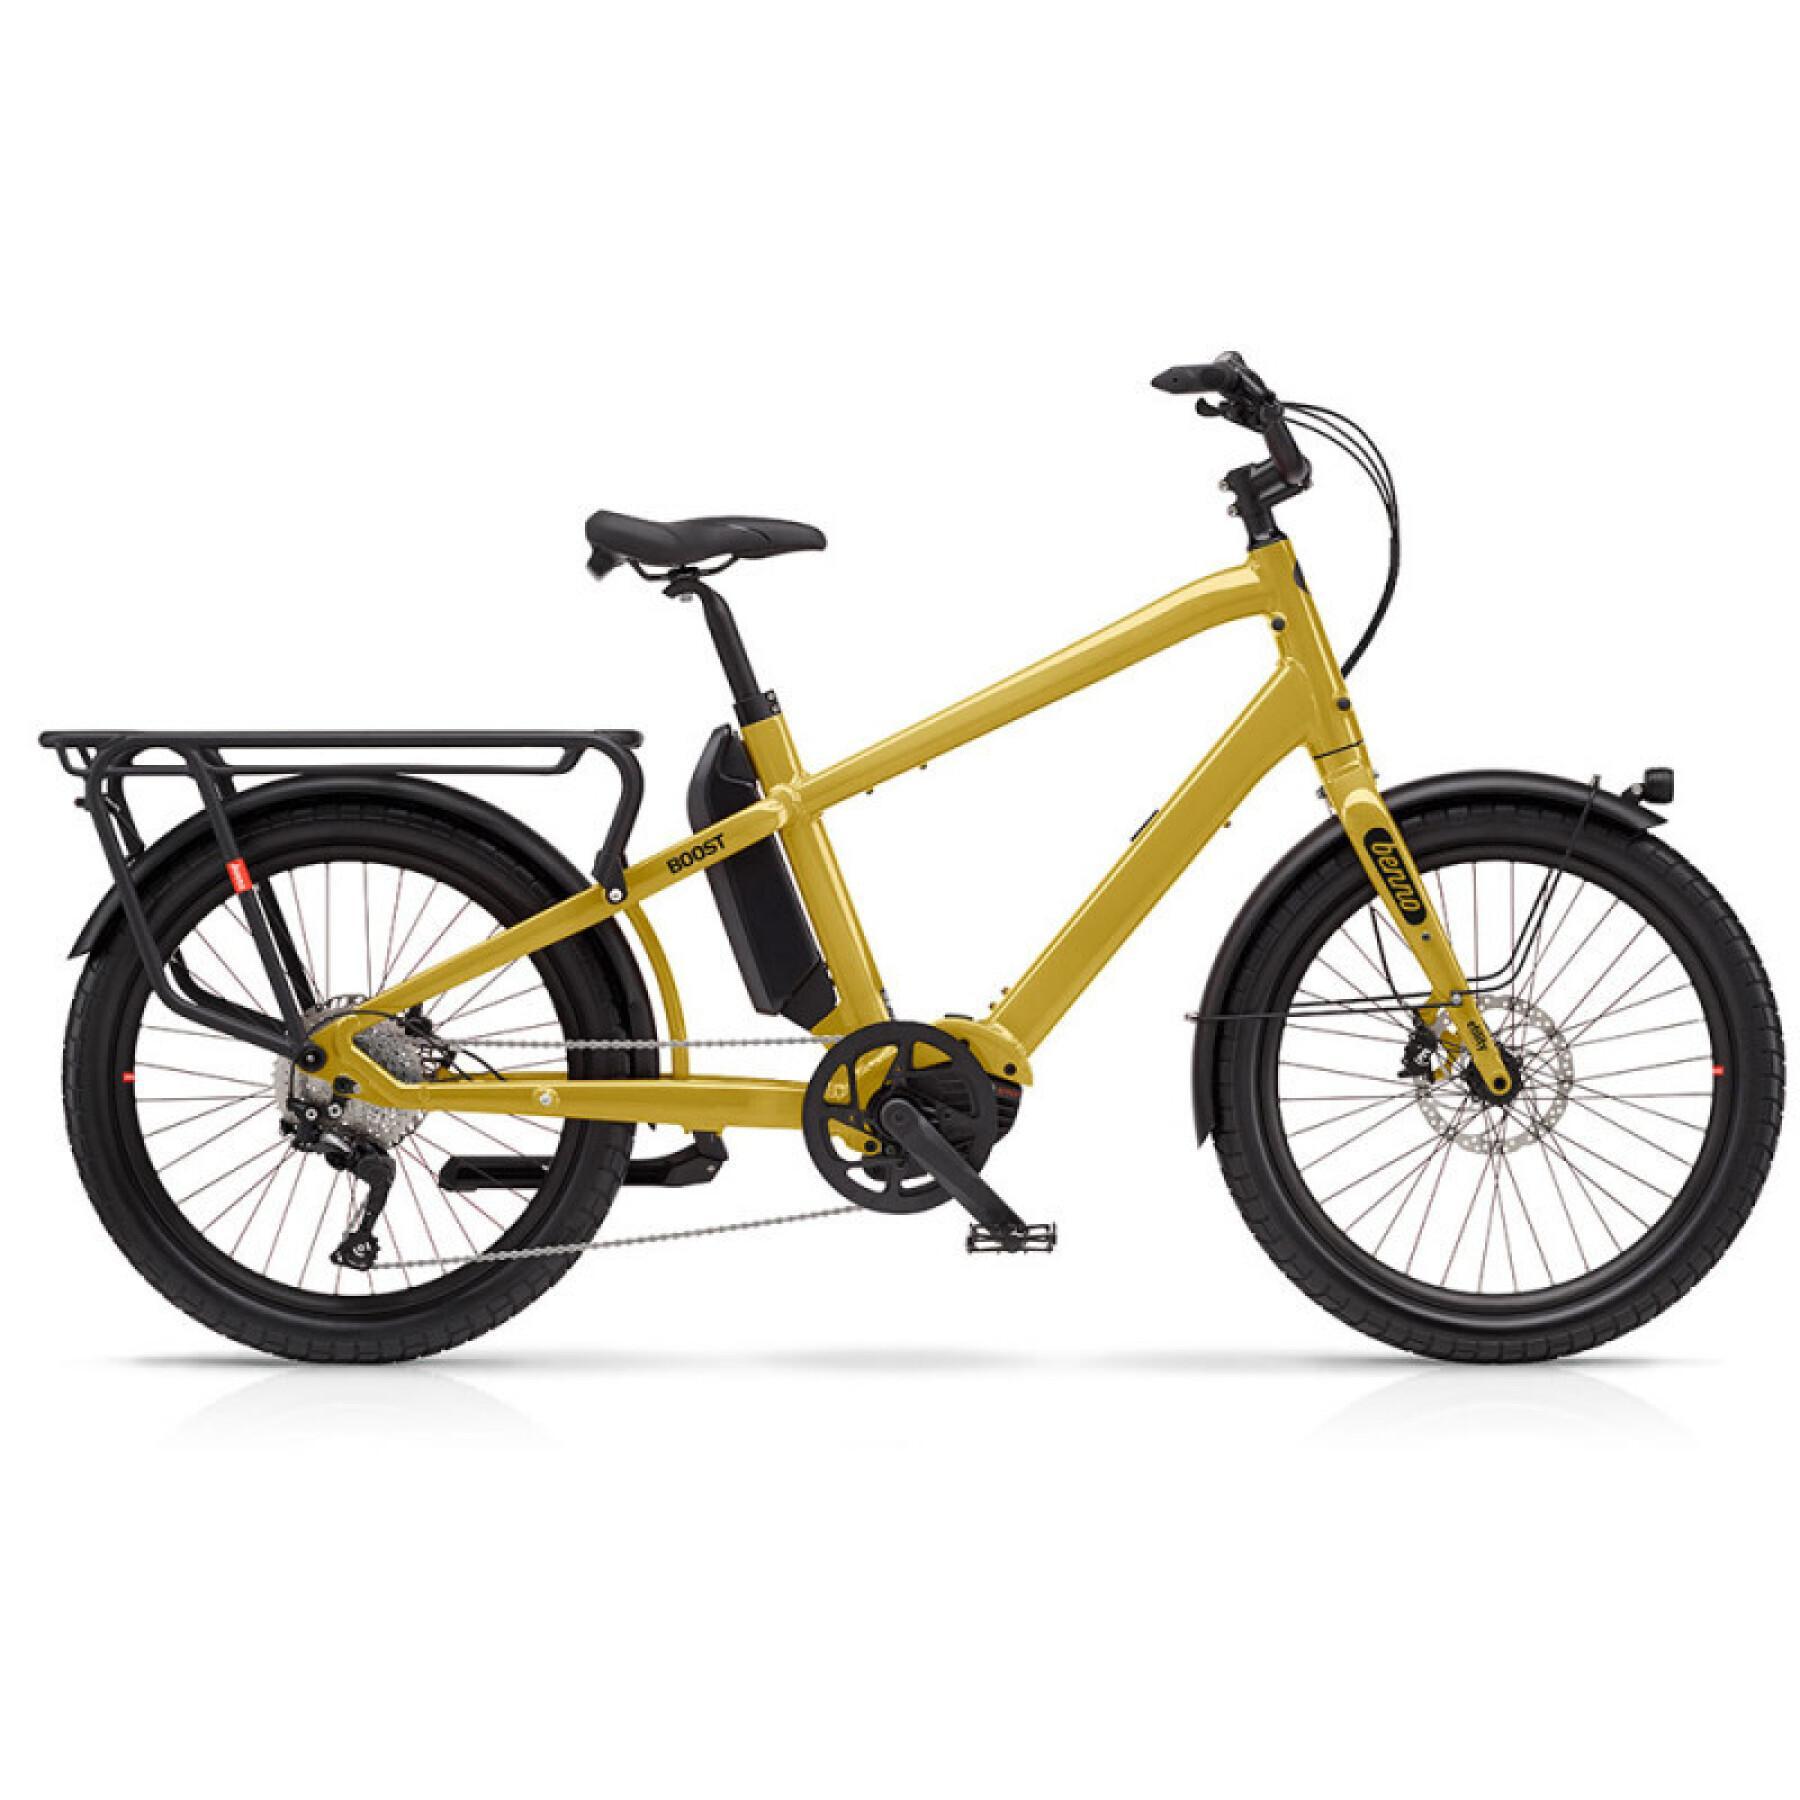 Elektrische fiets benno Boost E Evo 4 - Bosch Perf CX 500Wh